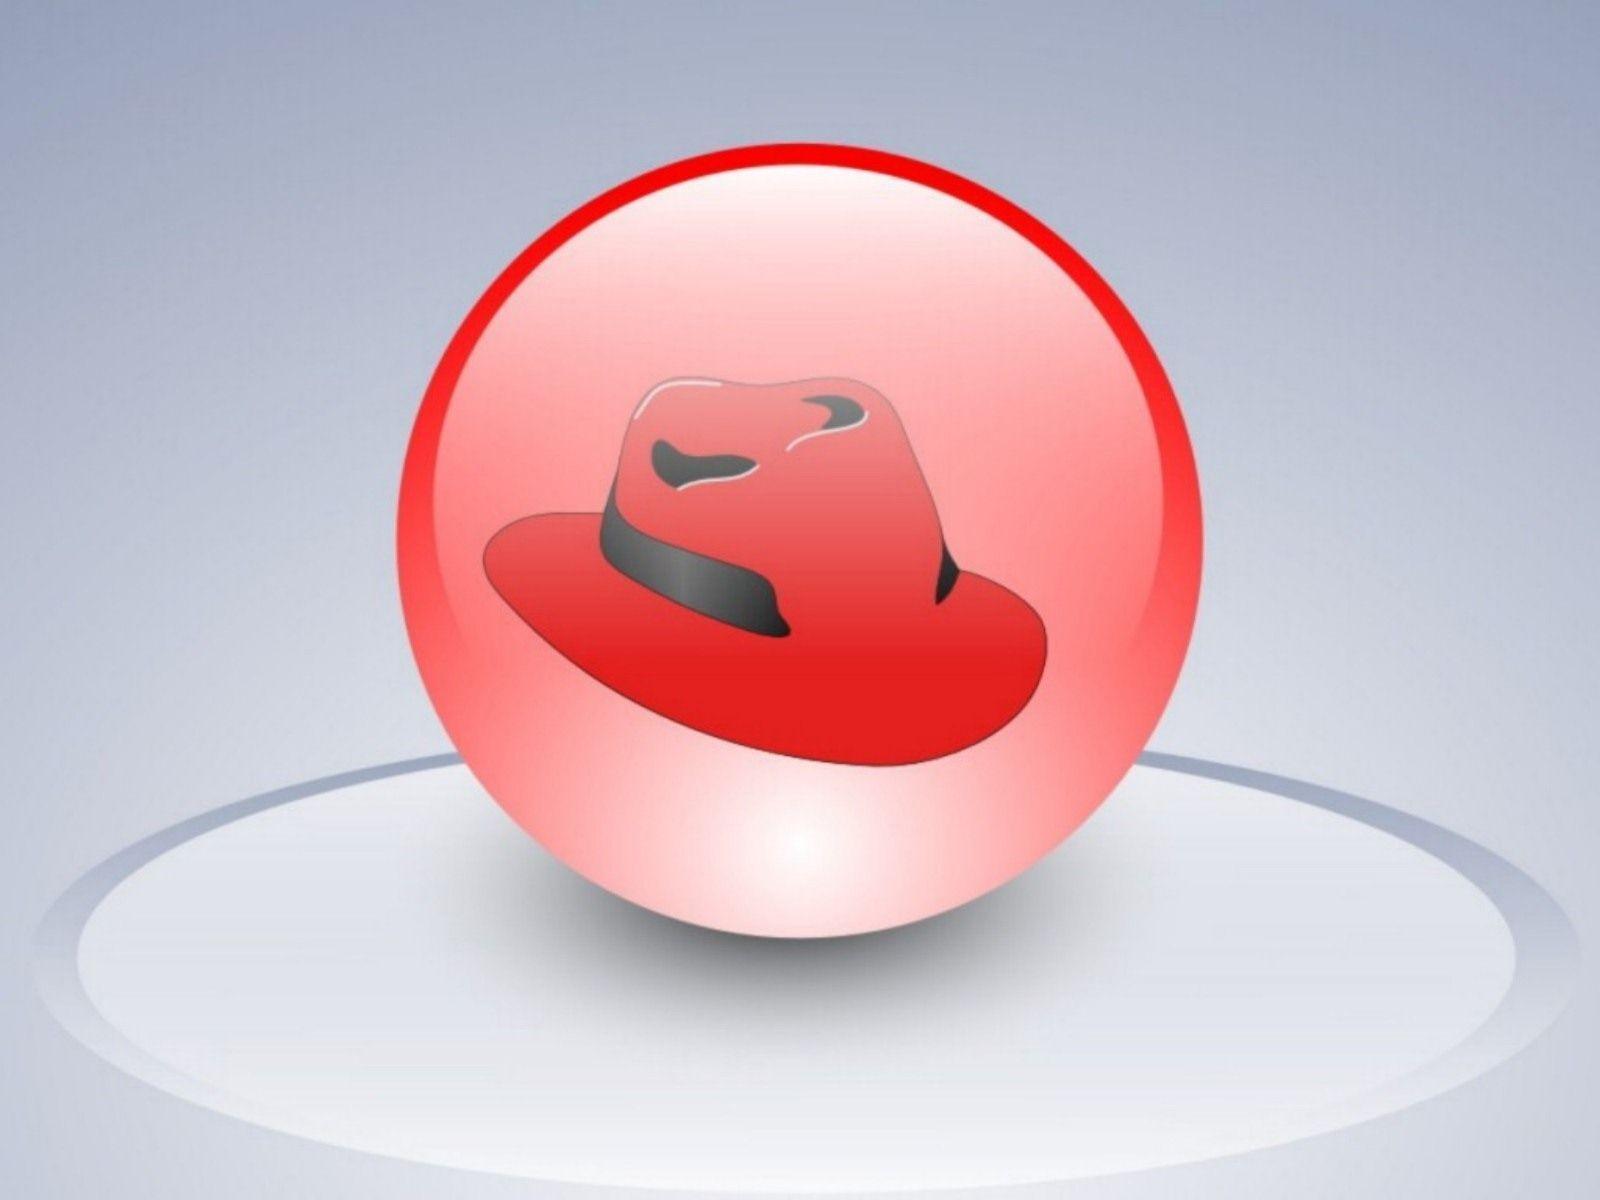 redhat linux logo